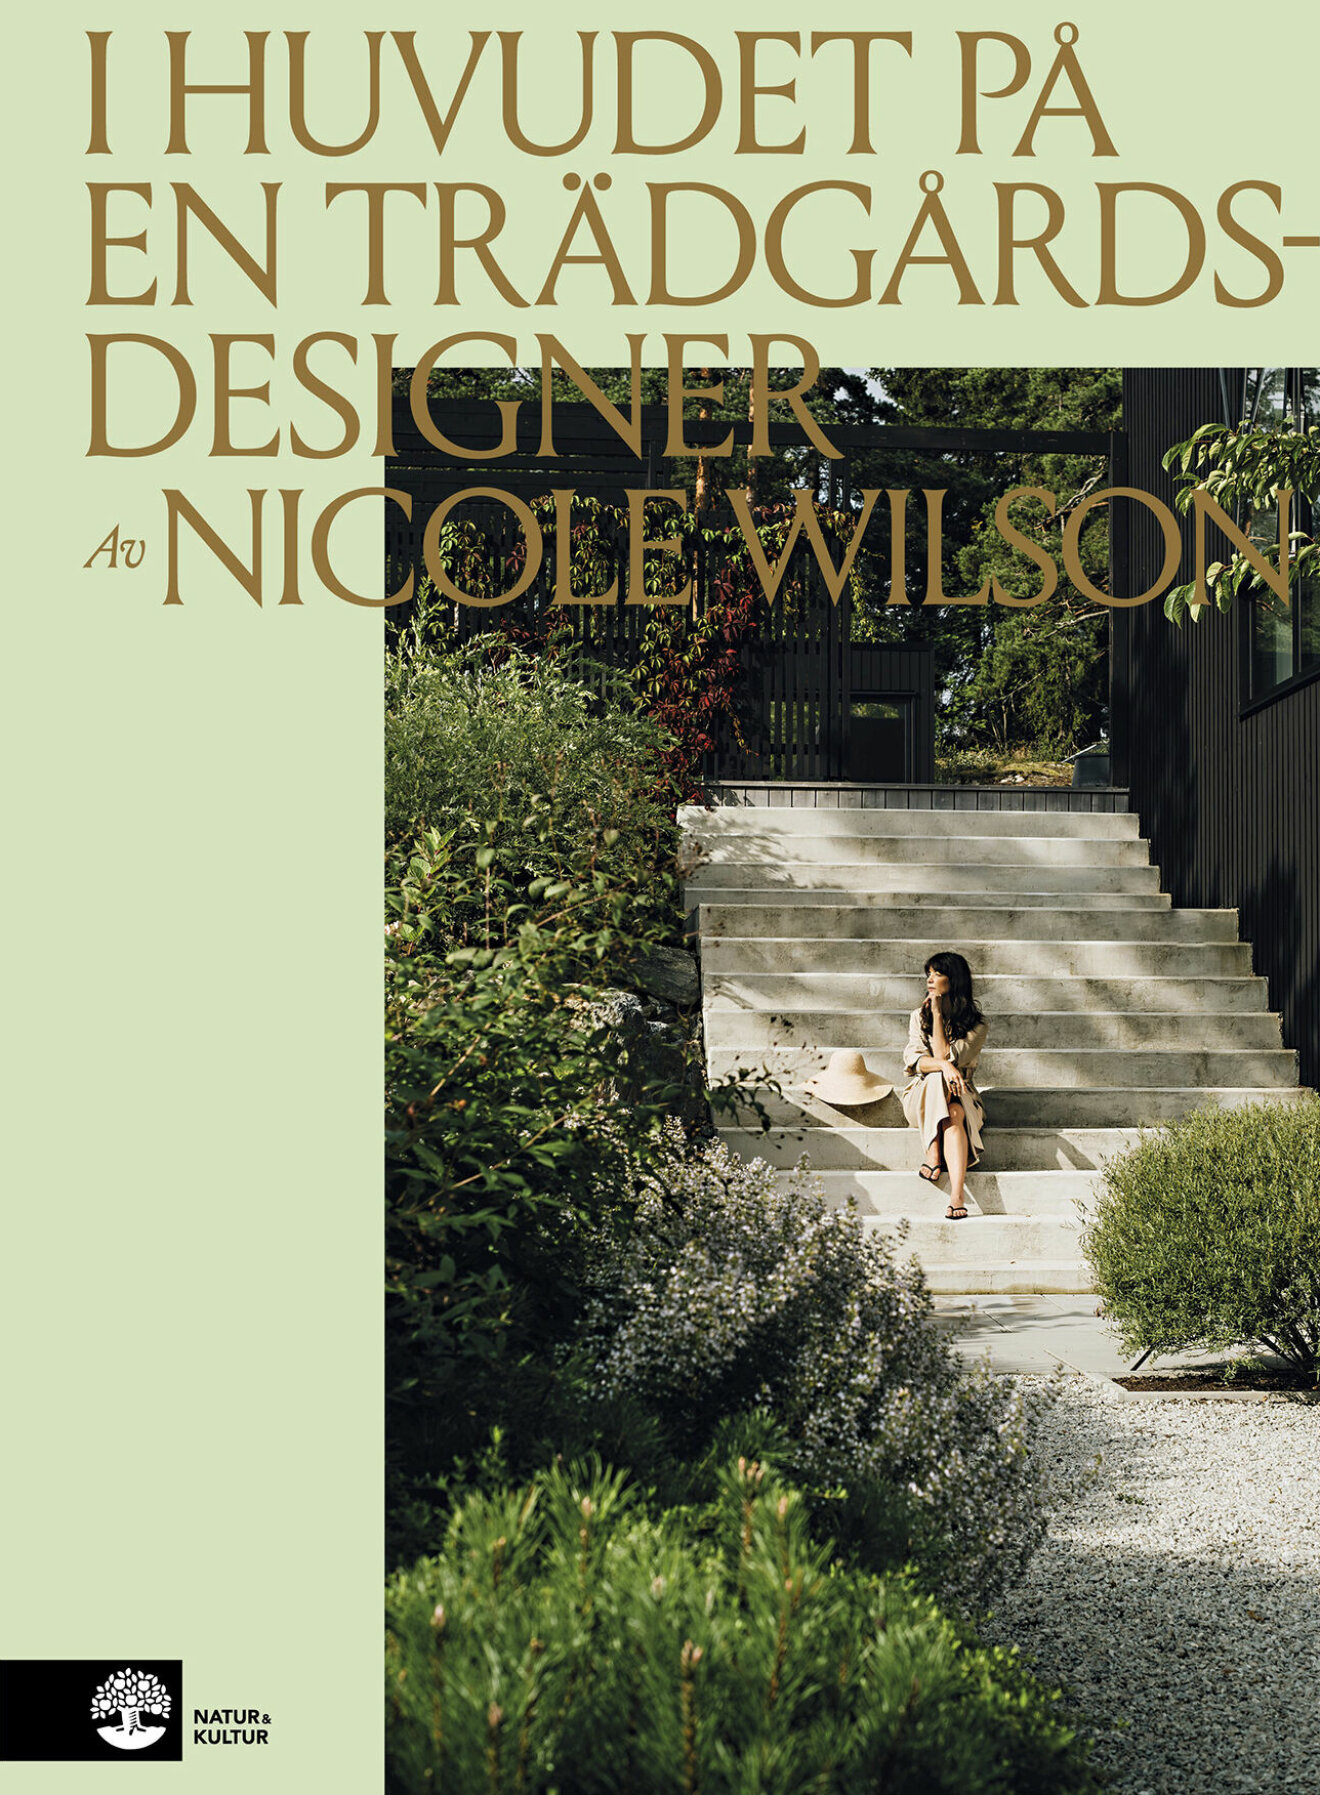 Nicole Wilsons debutbok I huvudet på en trädgårdsdesigner (Natur och Kultur).